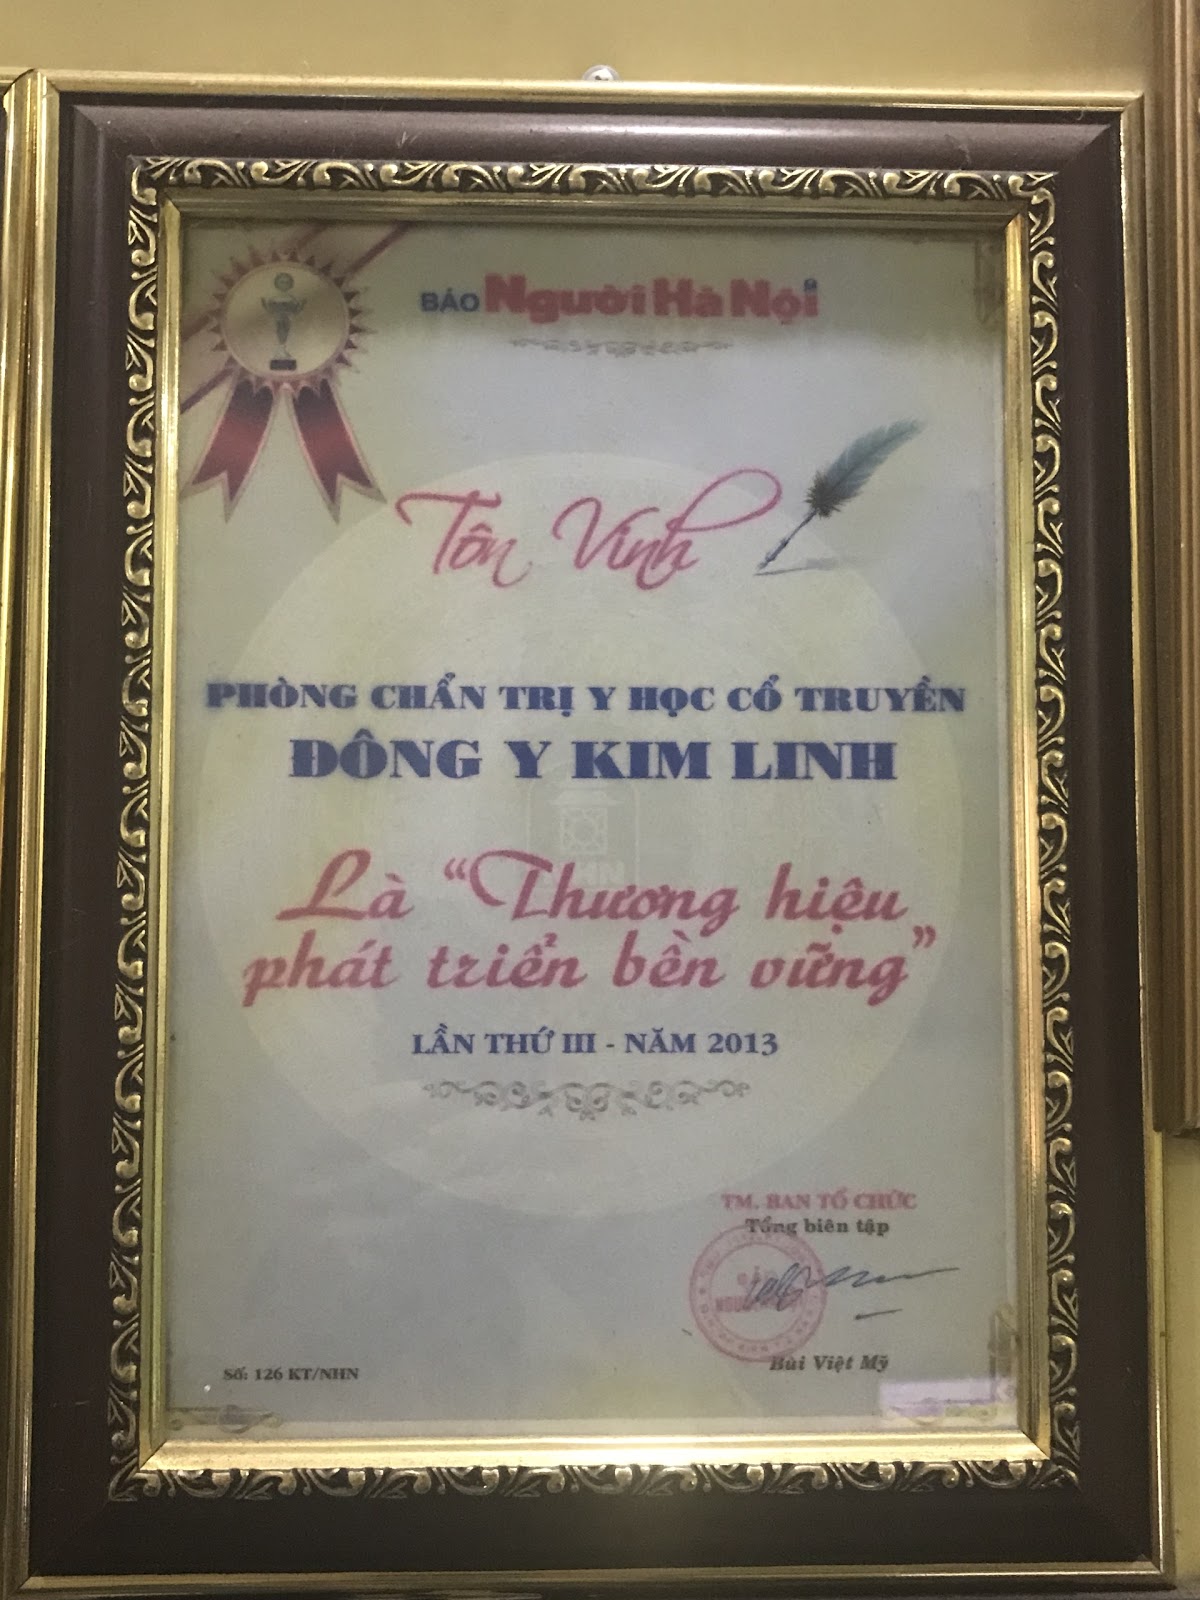 Báo Người Hà Nội trao tặng : "Thương hiệu phát triển bền vững "